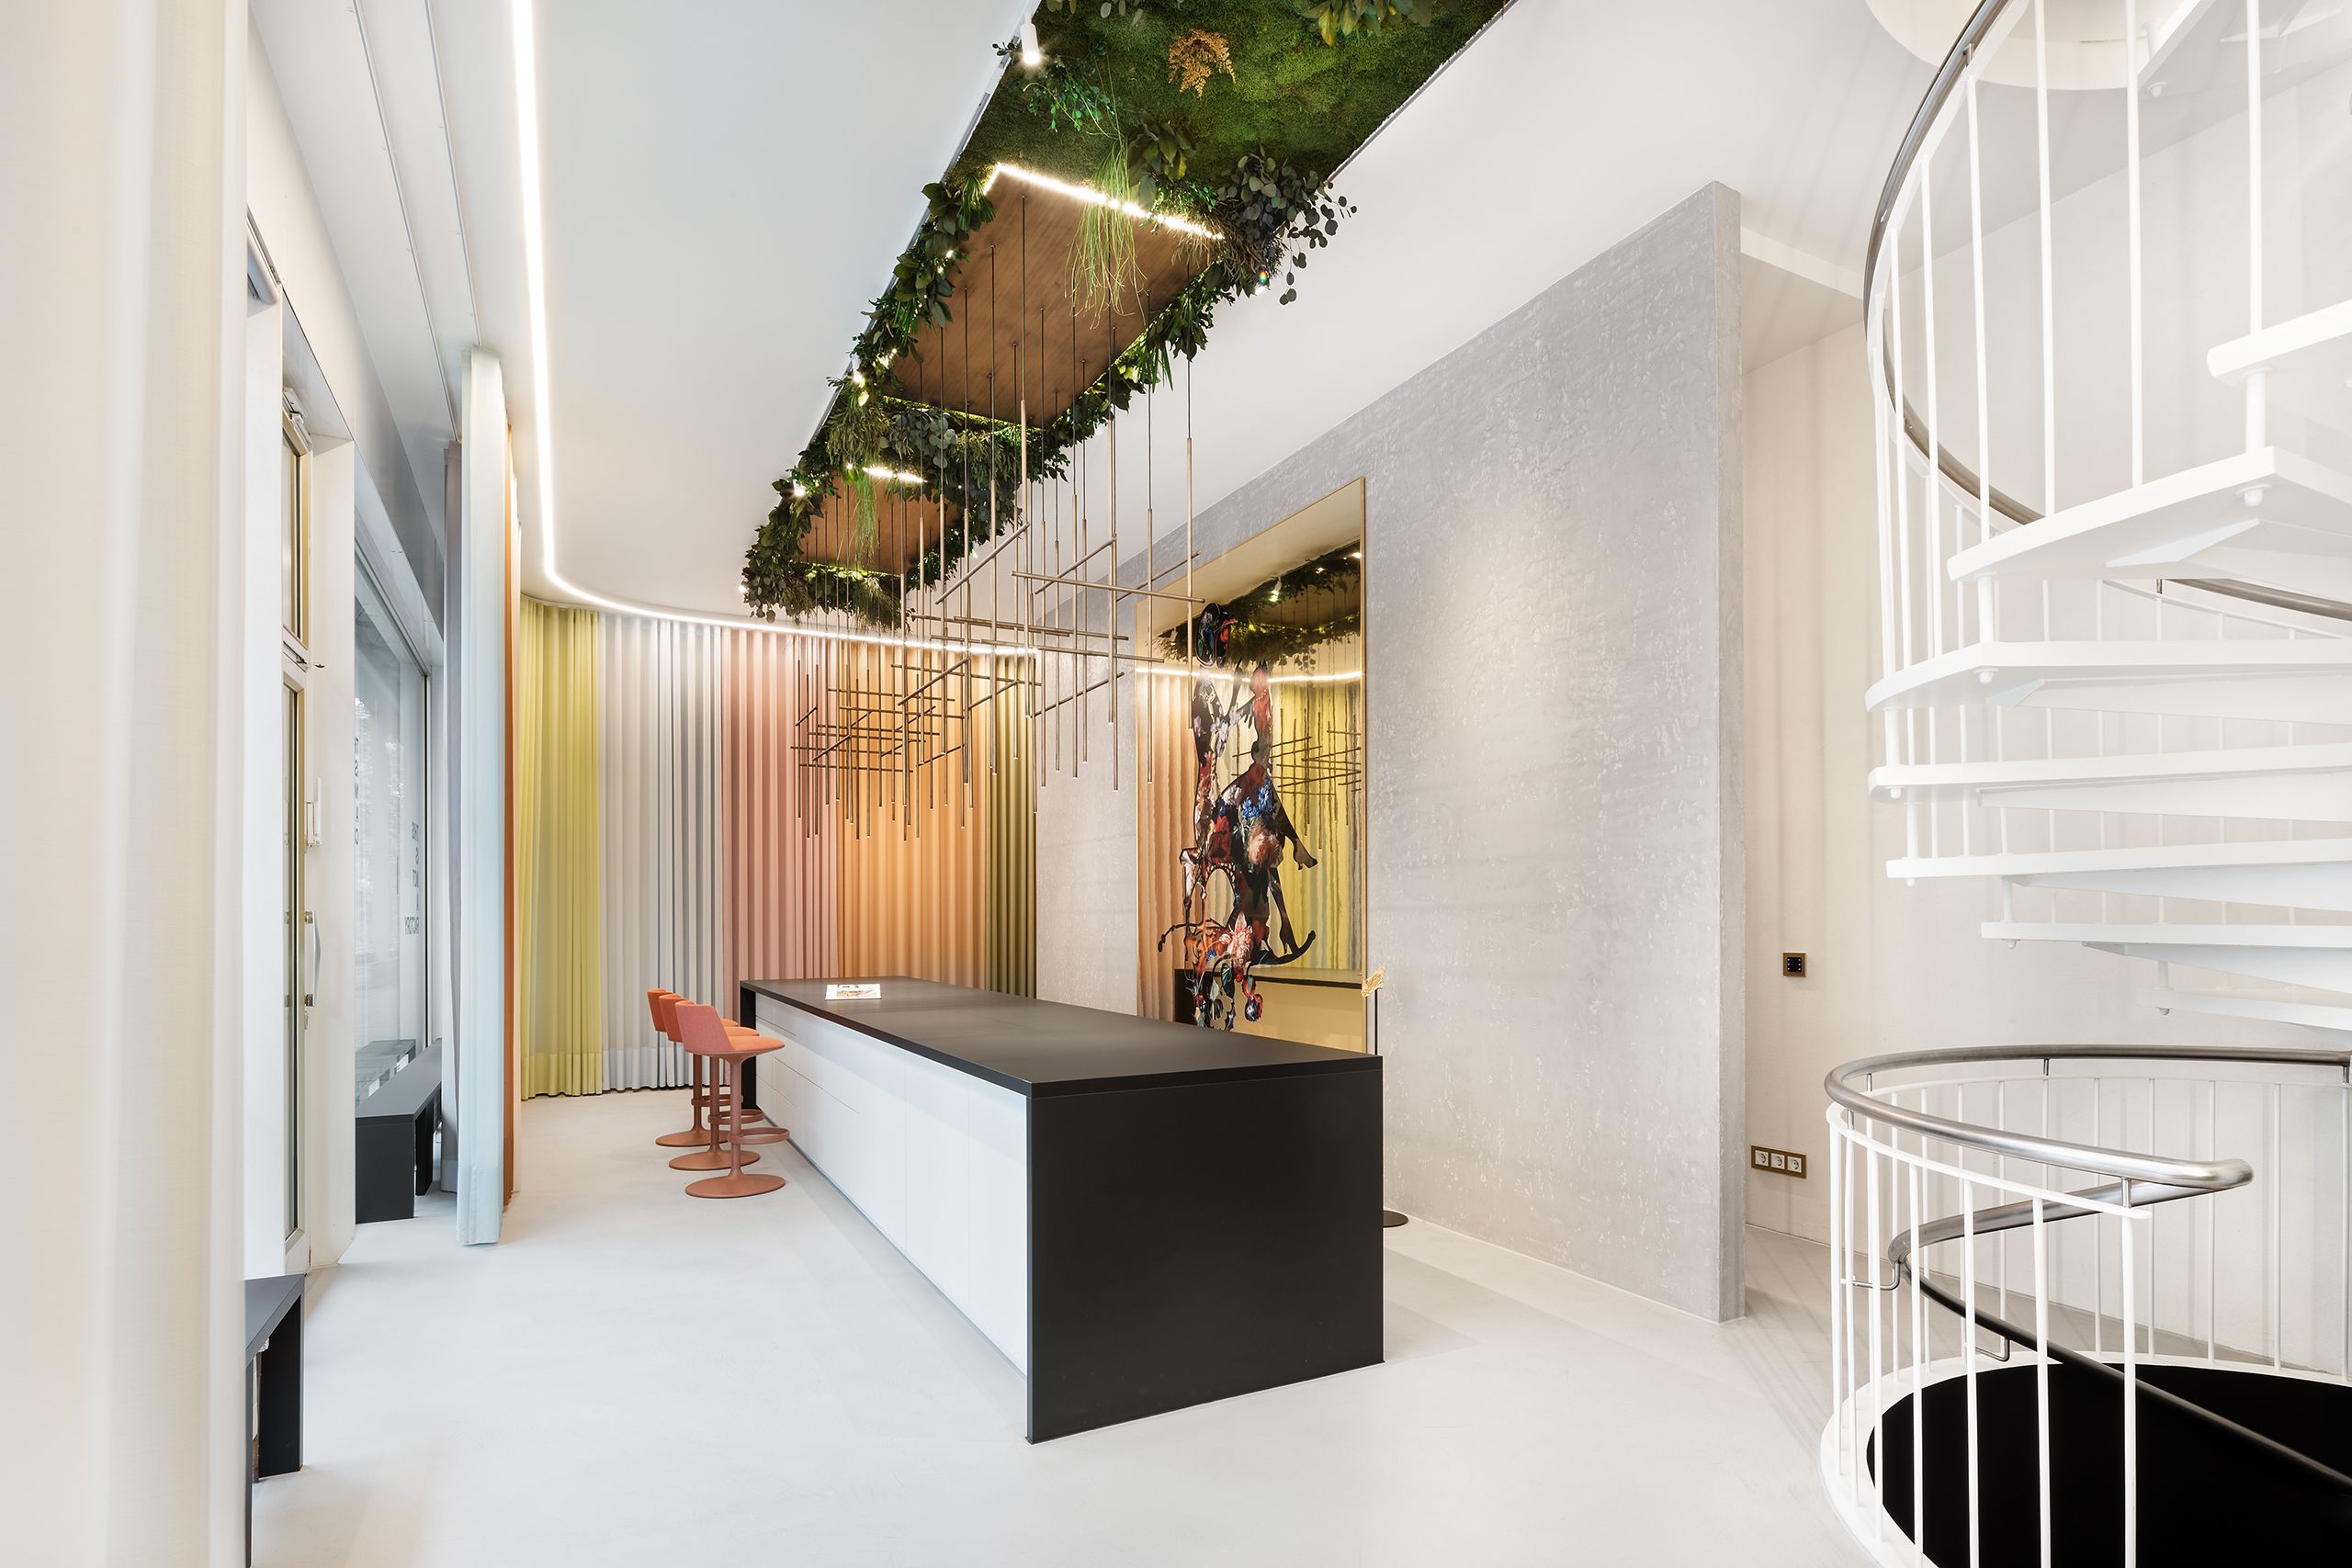 Showroom mit verschiedenfarbigen Vorhängen von Création Baumann. Eine Wendeltreppe verbindet die Stockwerke.